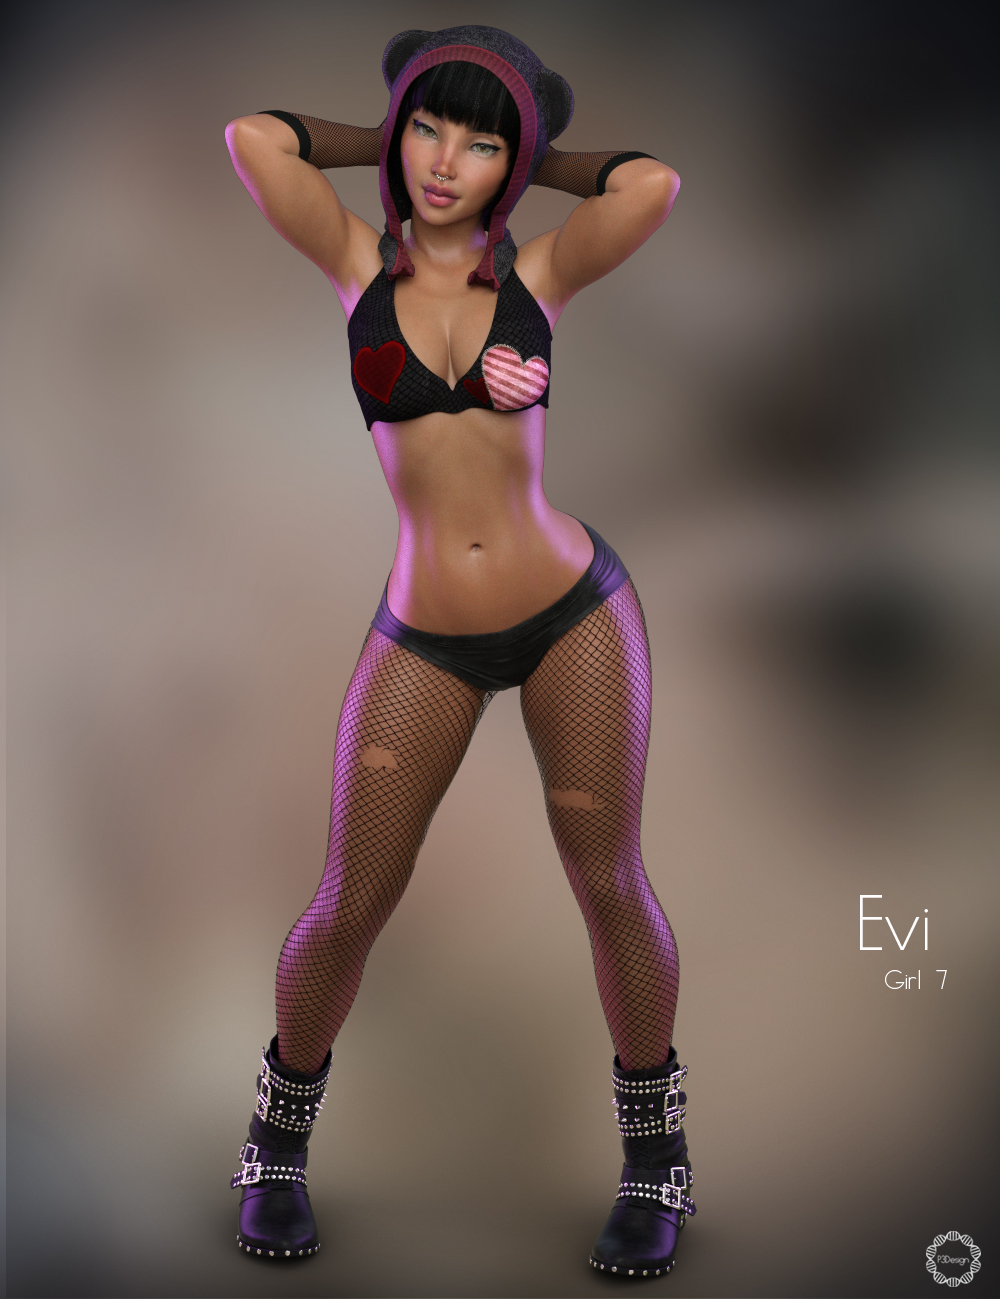 P3D Evi for Girl 7 by: P3Design, 3D Models by Daz 3D